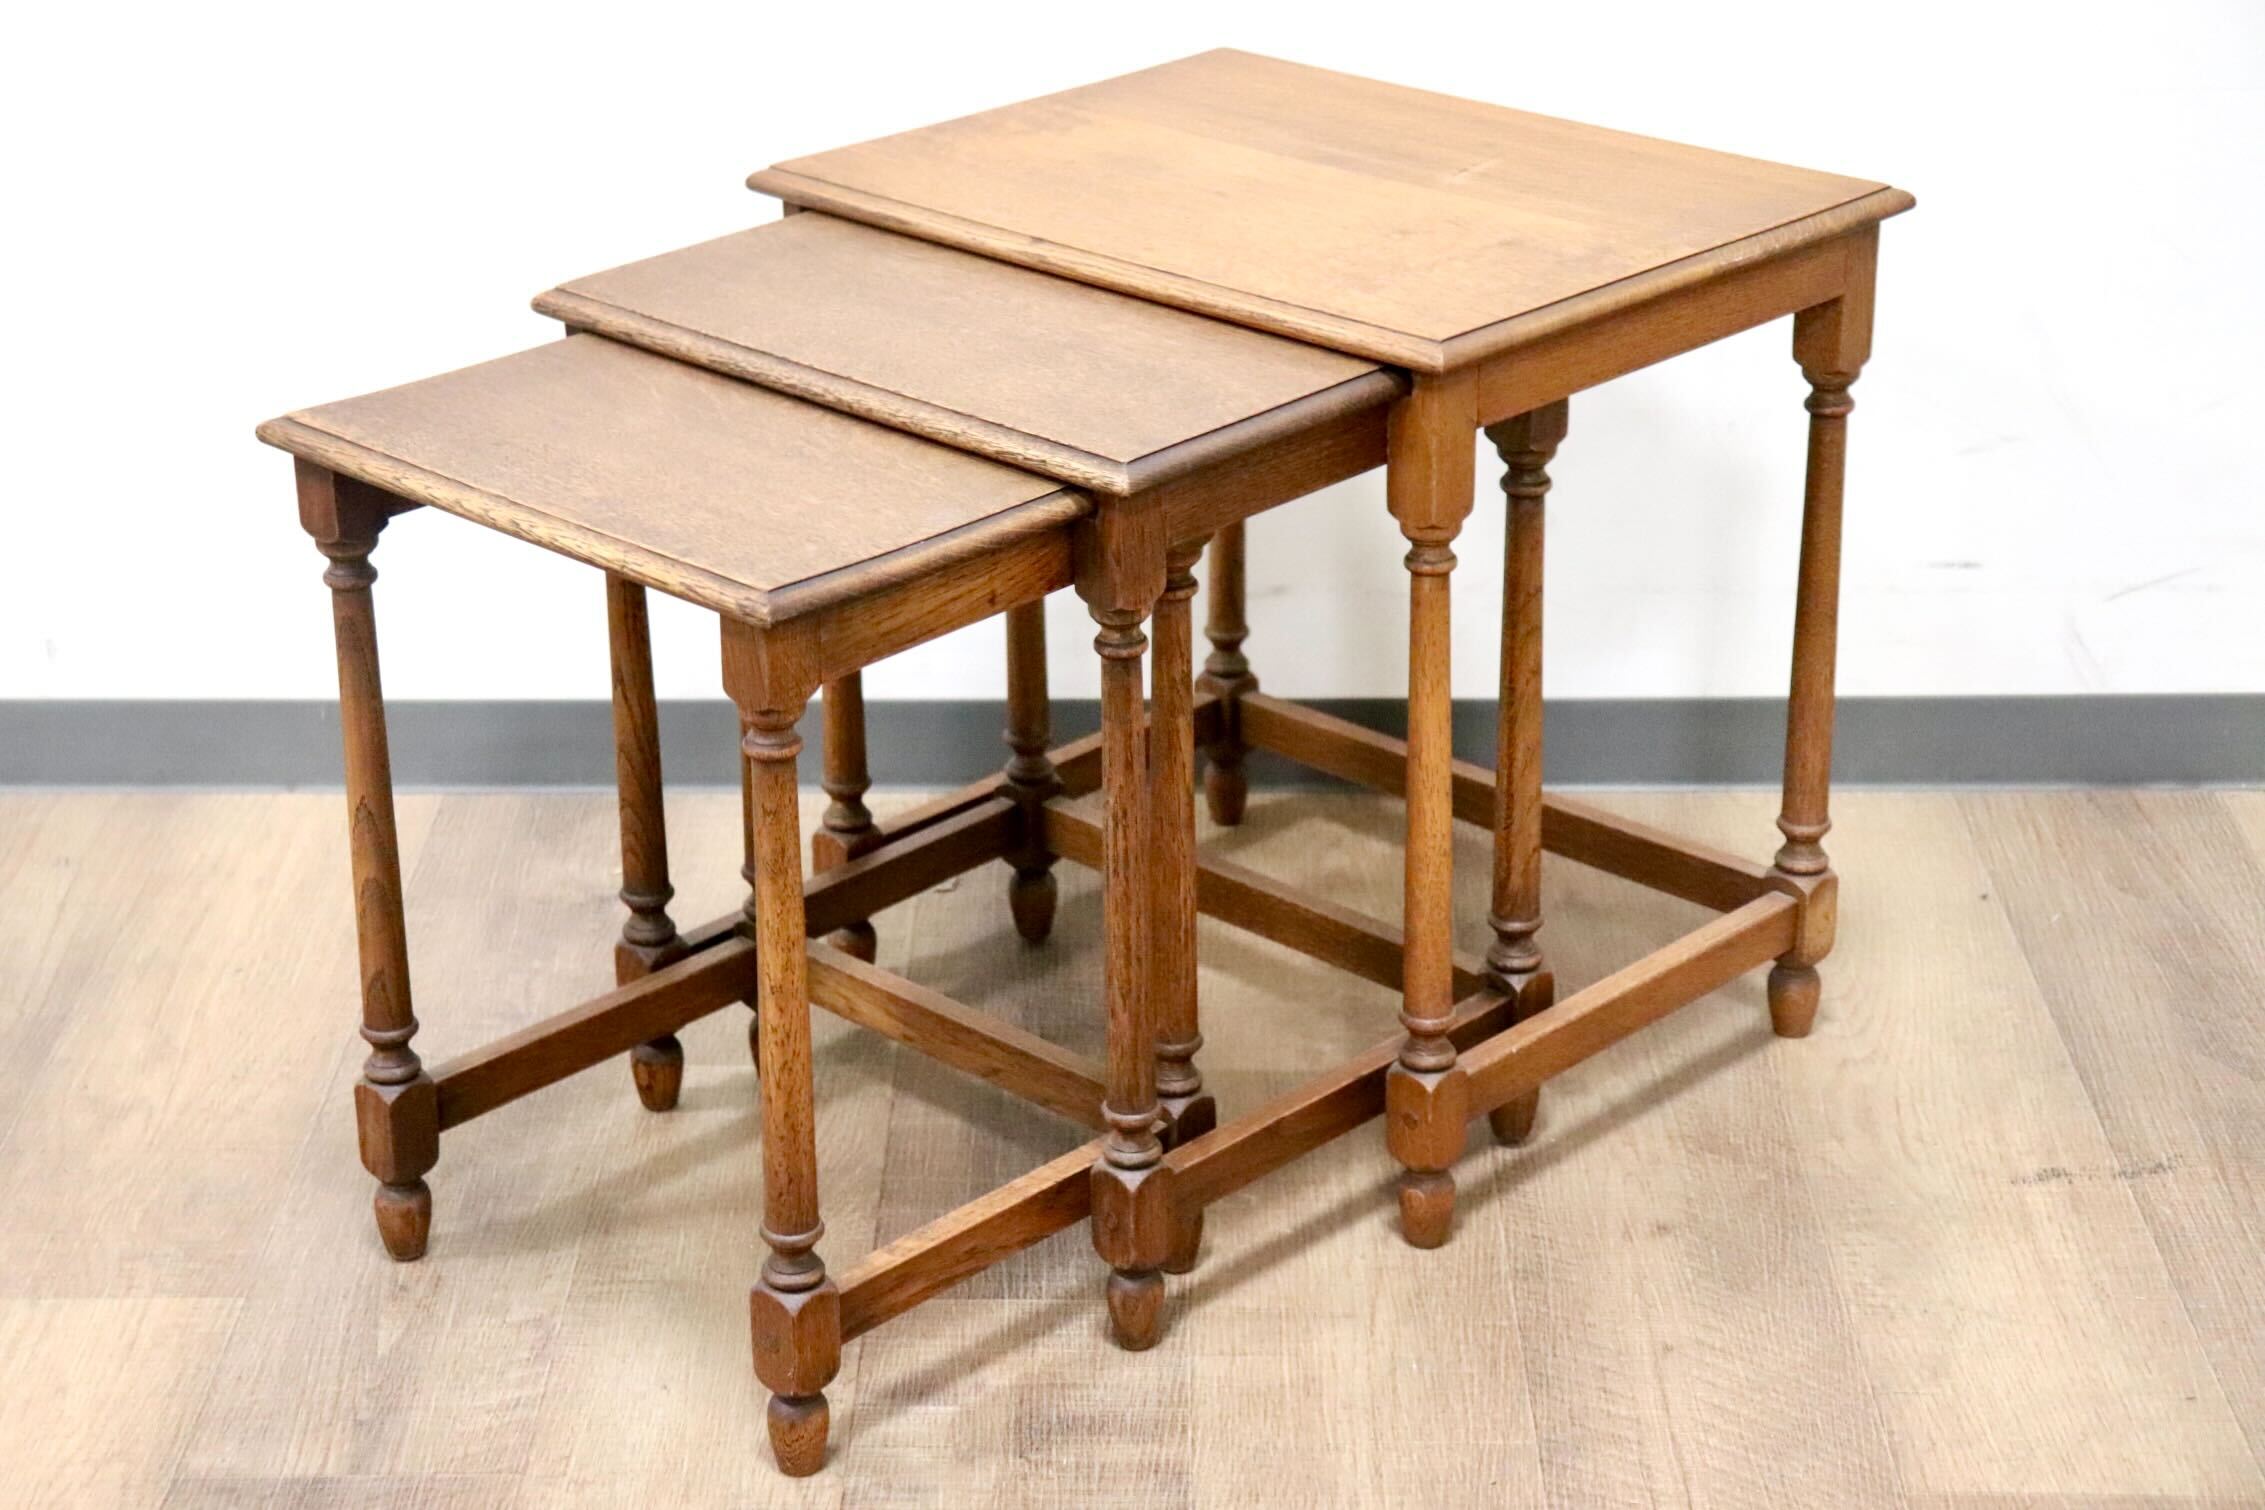 GMHH22○英国アンティーク ネストテーブル サイドテーブル 机 入れ子式 コーヒーテーブル イギリス ヴィンテージ クラシック オーク材